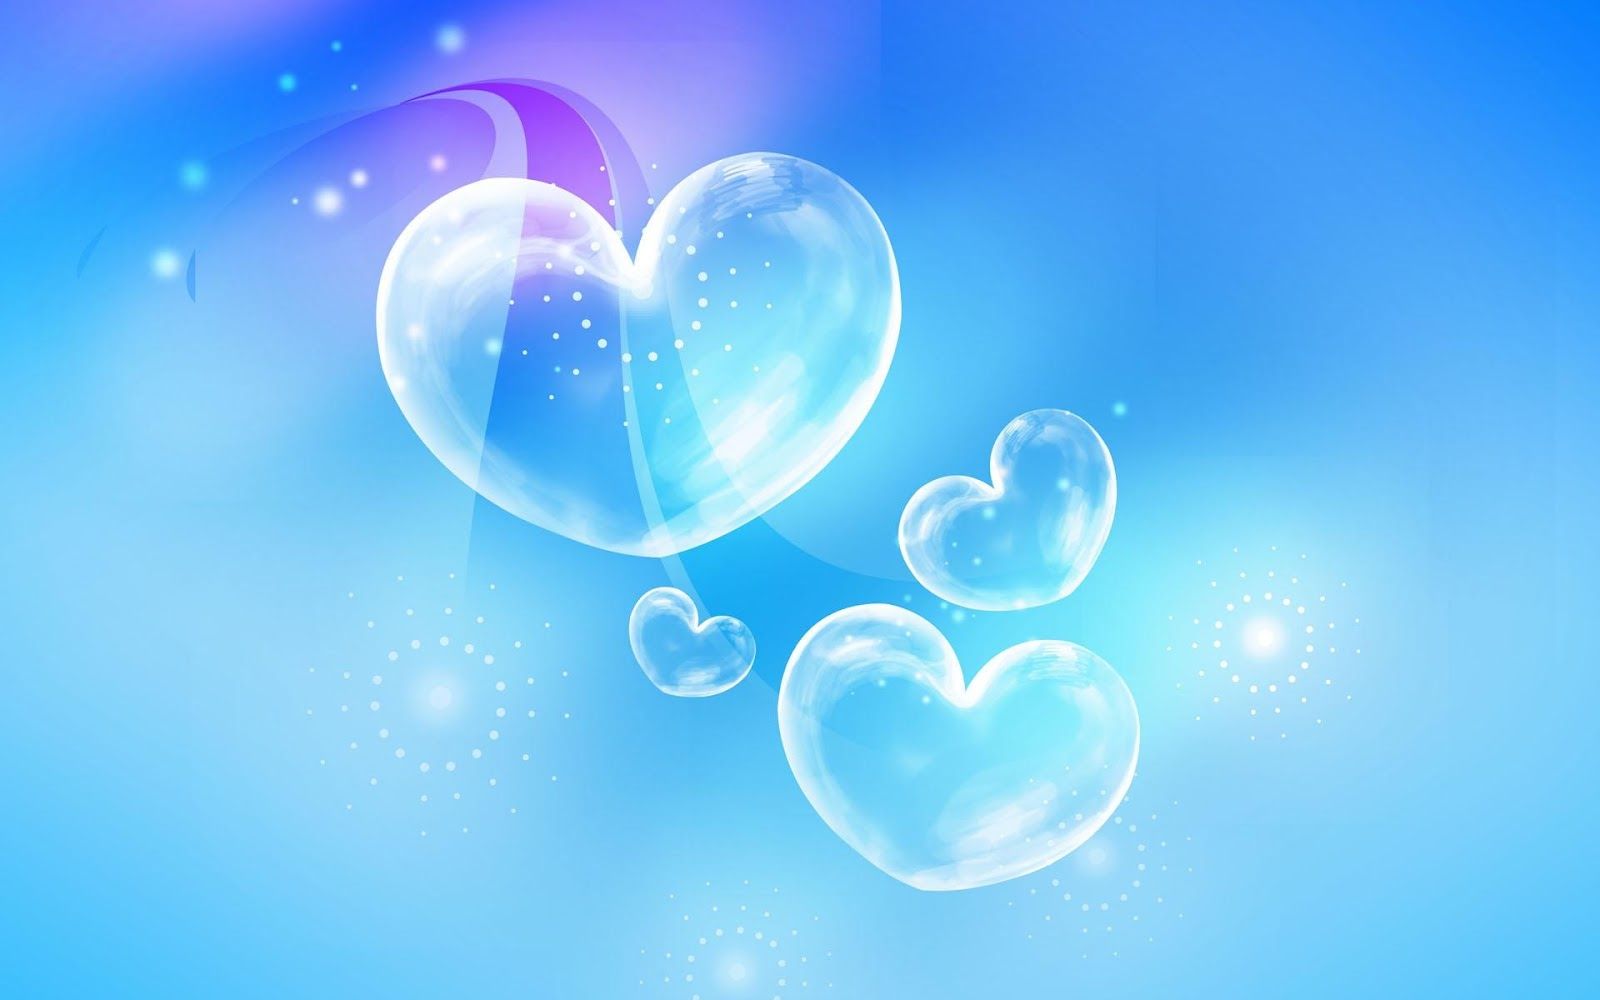 Blue Bubble Heart HD Wallpaper. Heart wallpaper, Heart wallpaper hd, Bubbles wallpaper